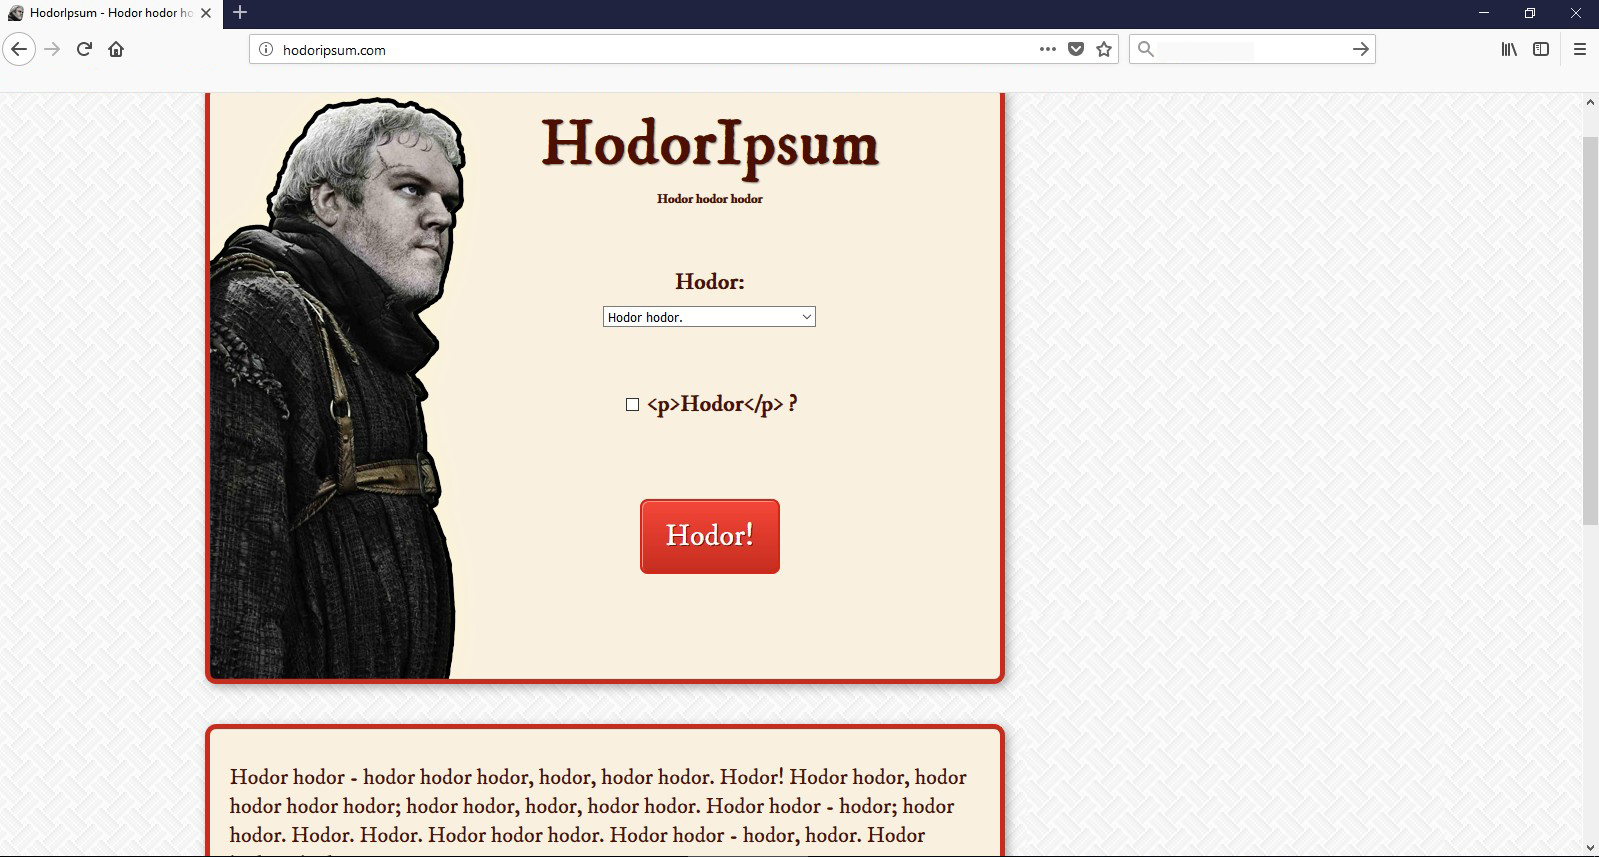 Hodor Hodor... mehr braucht man nicht zu wissen für das Hodor Ipsum.